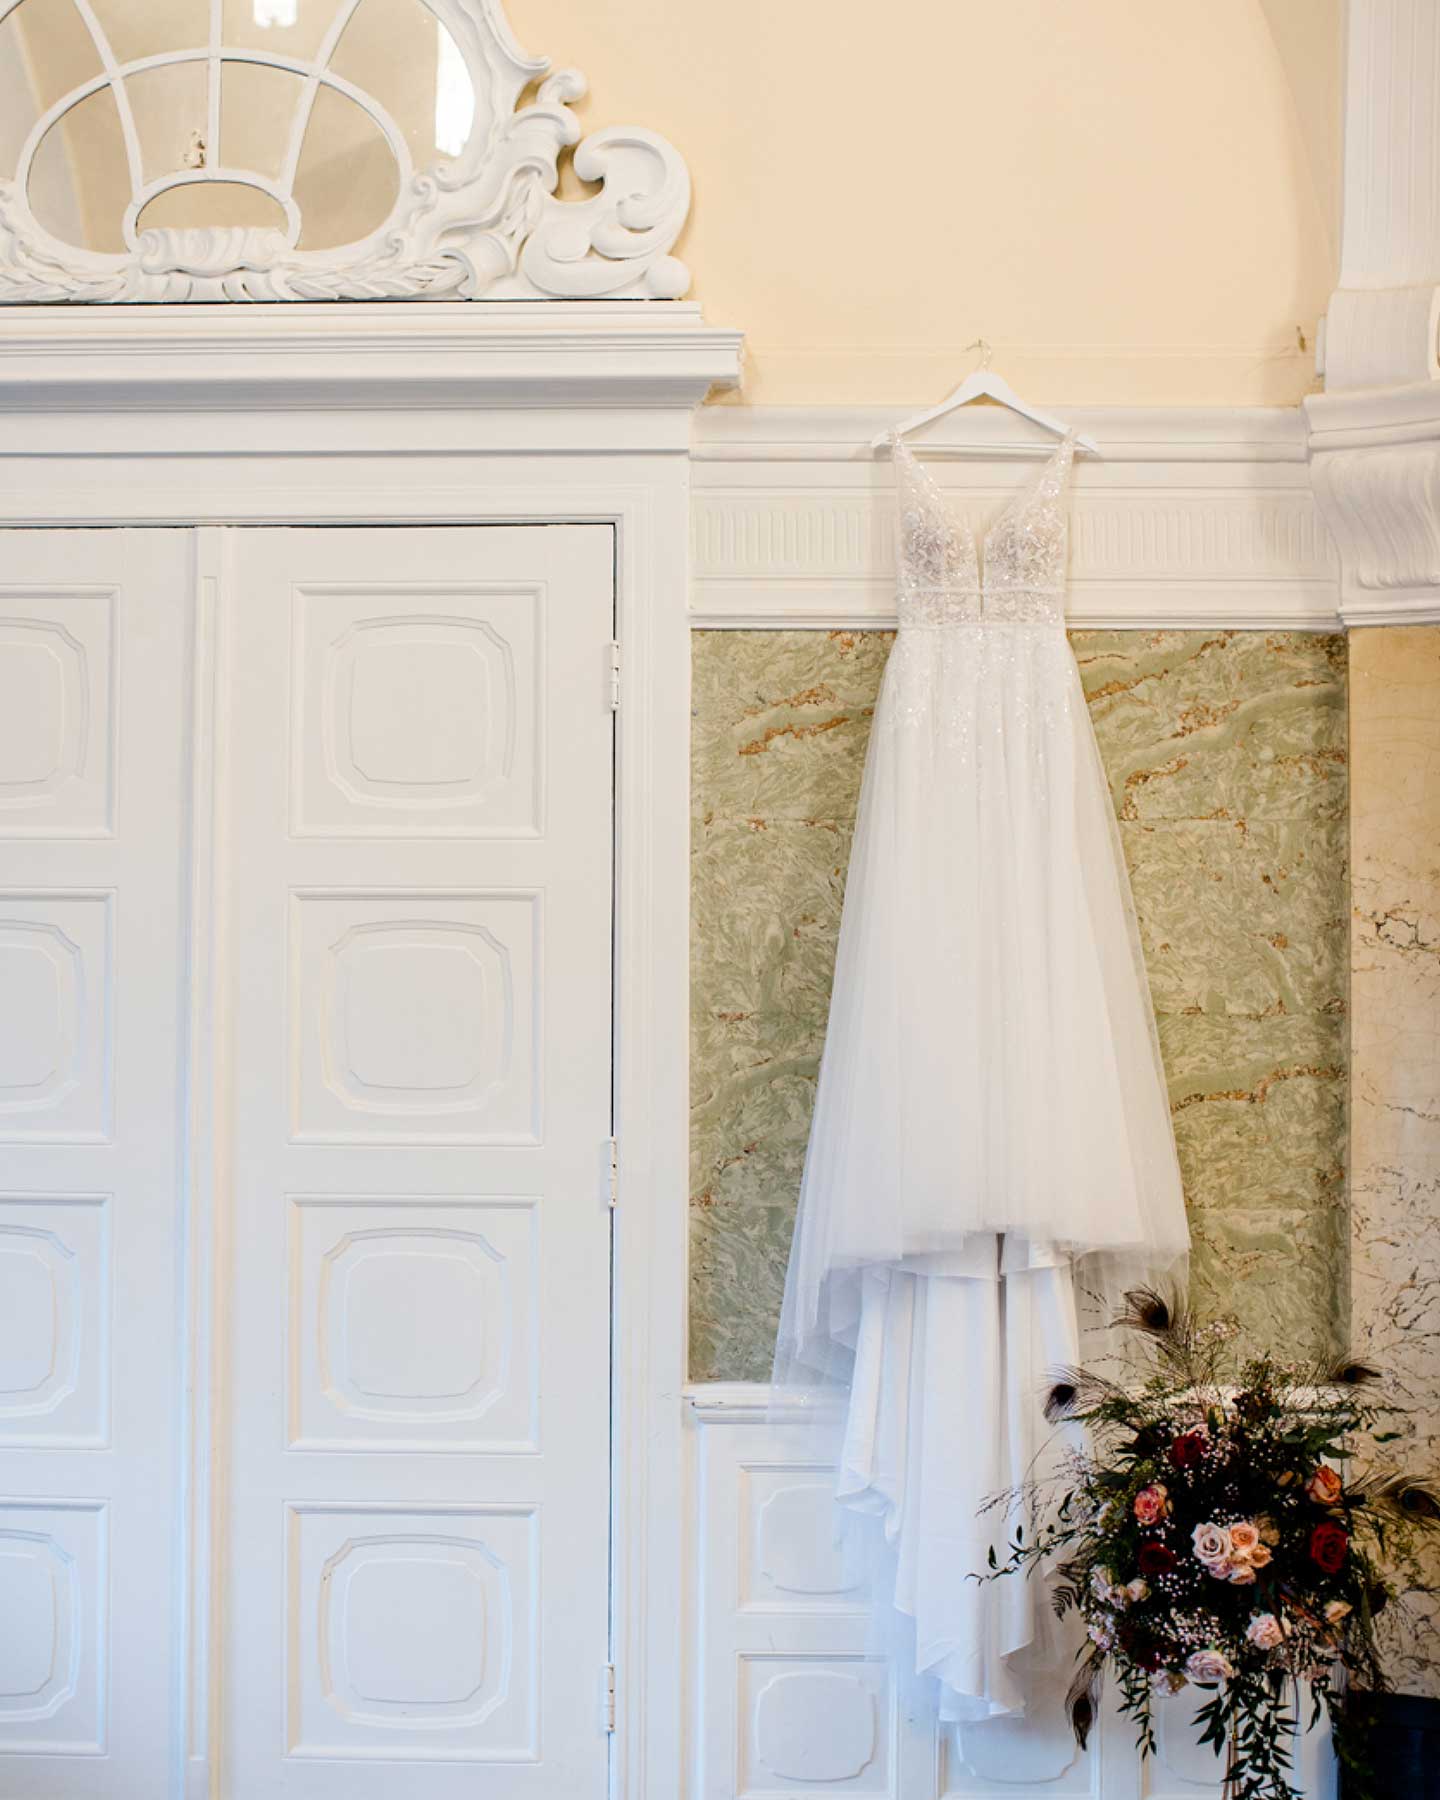 Romantisches Brautkleid hängt an Bügel an der Wand für das Getting Ready der Braut.